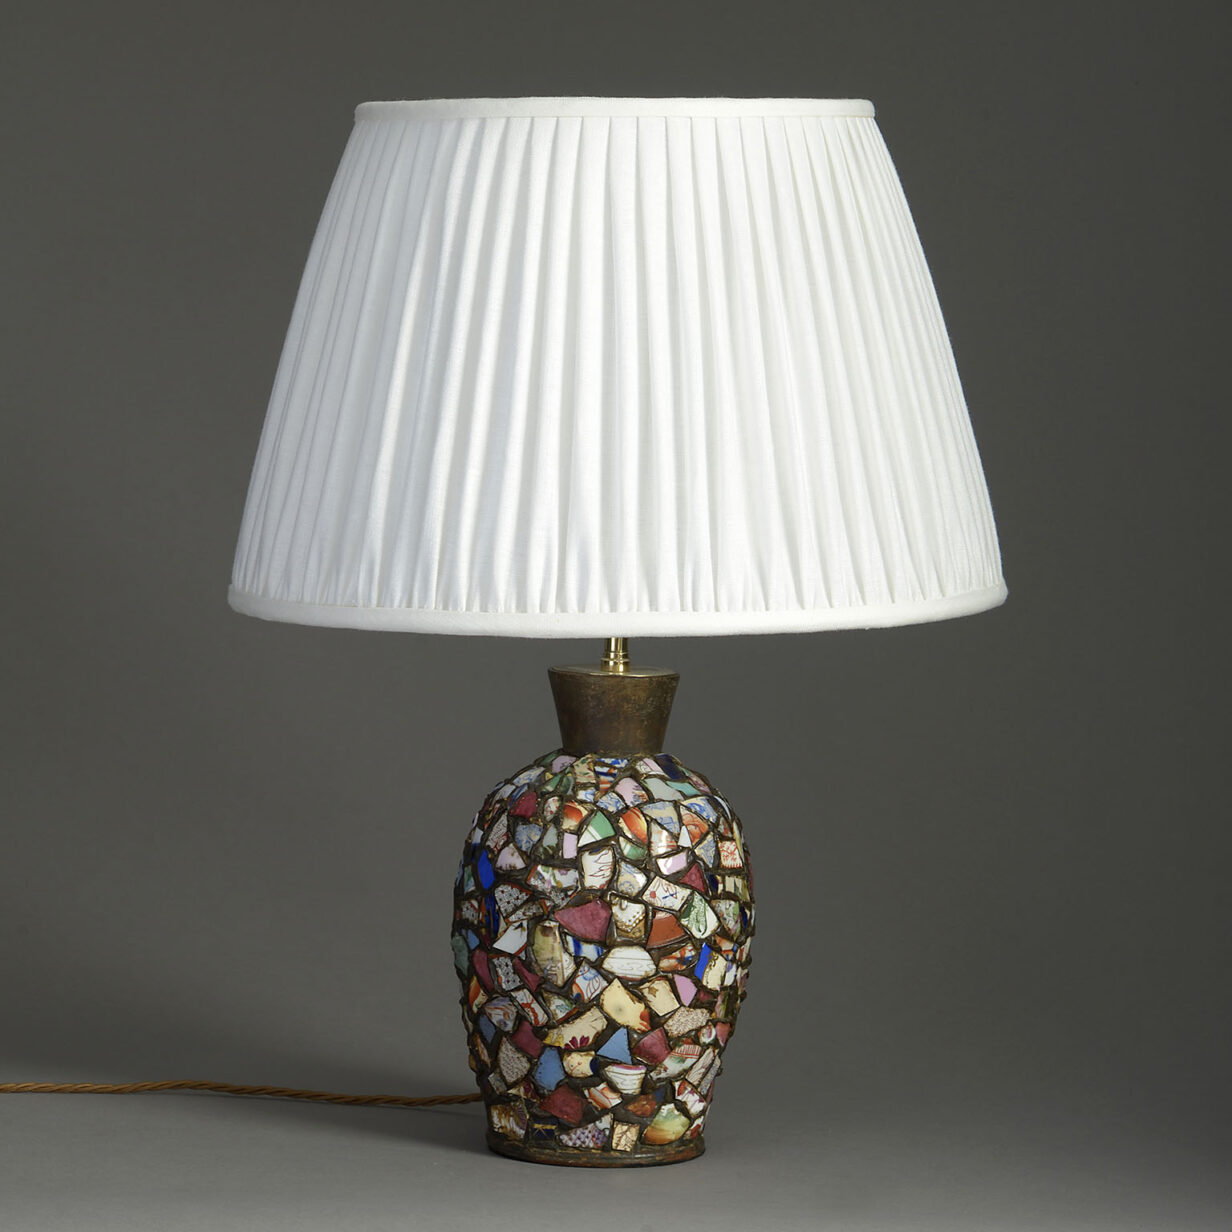 Ceramic collage lamp